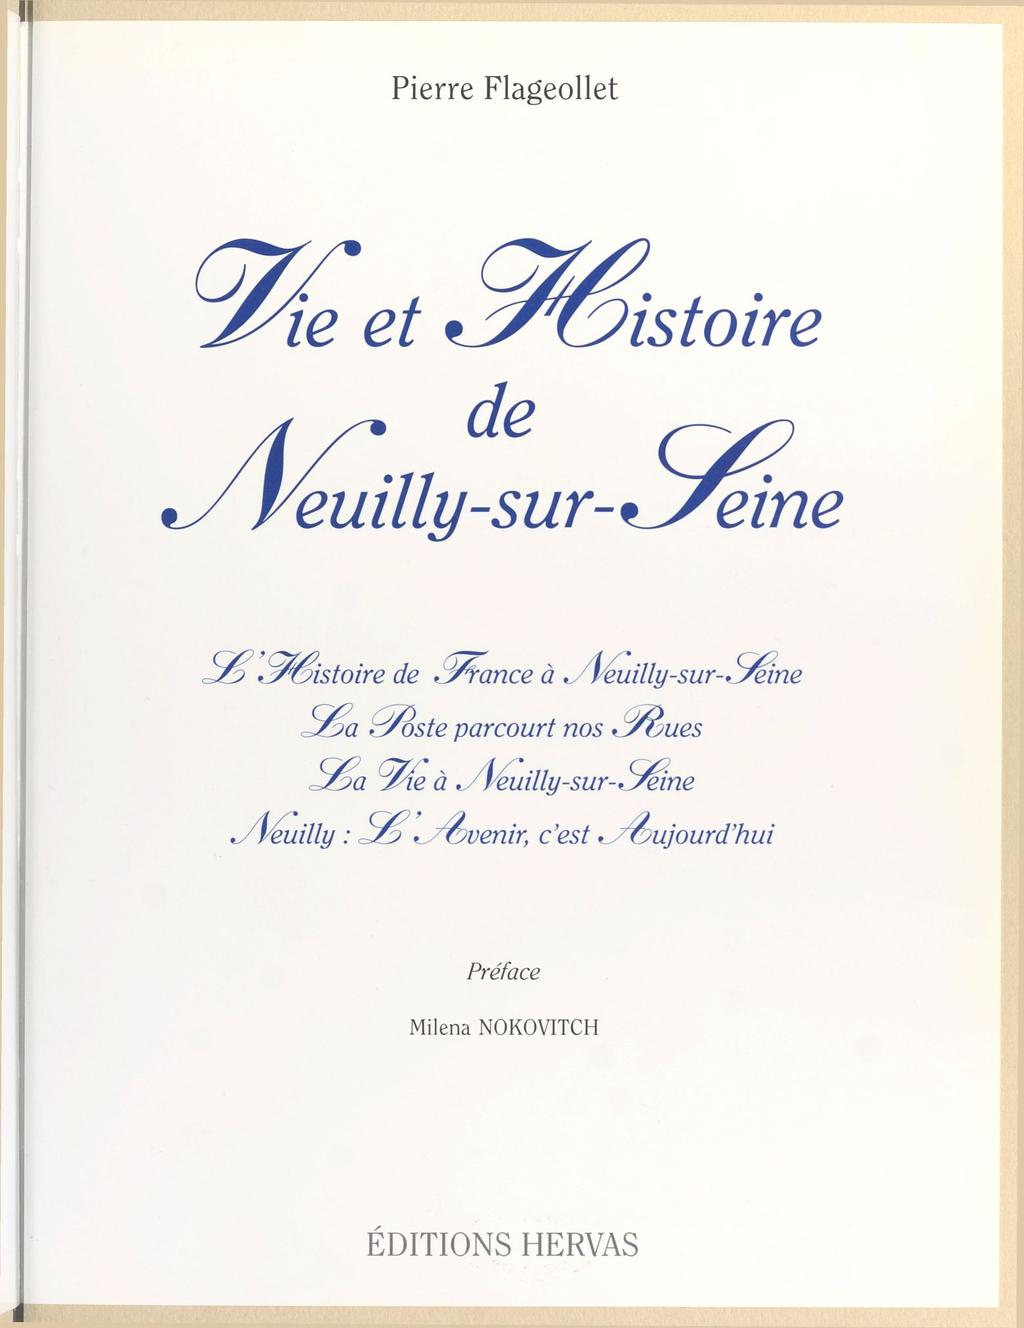 Pierre Flageollet Vie et Histoire N e u i l l - s u r - S e i n e $ ^êistoire de France à Neuilly-sur- Siene rydste